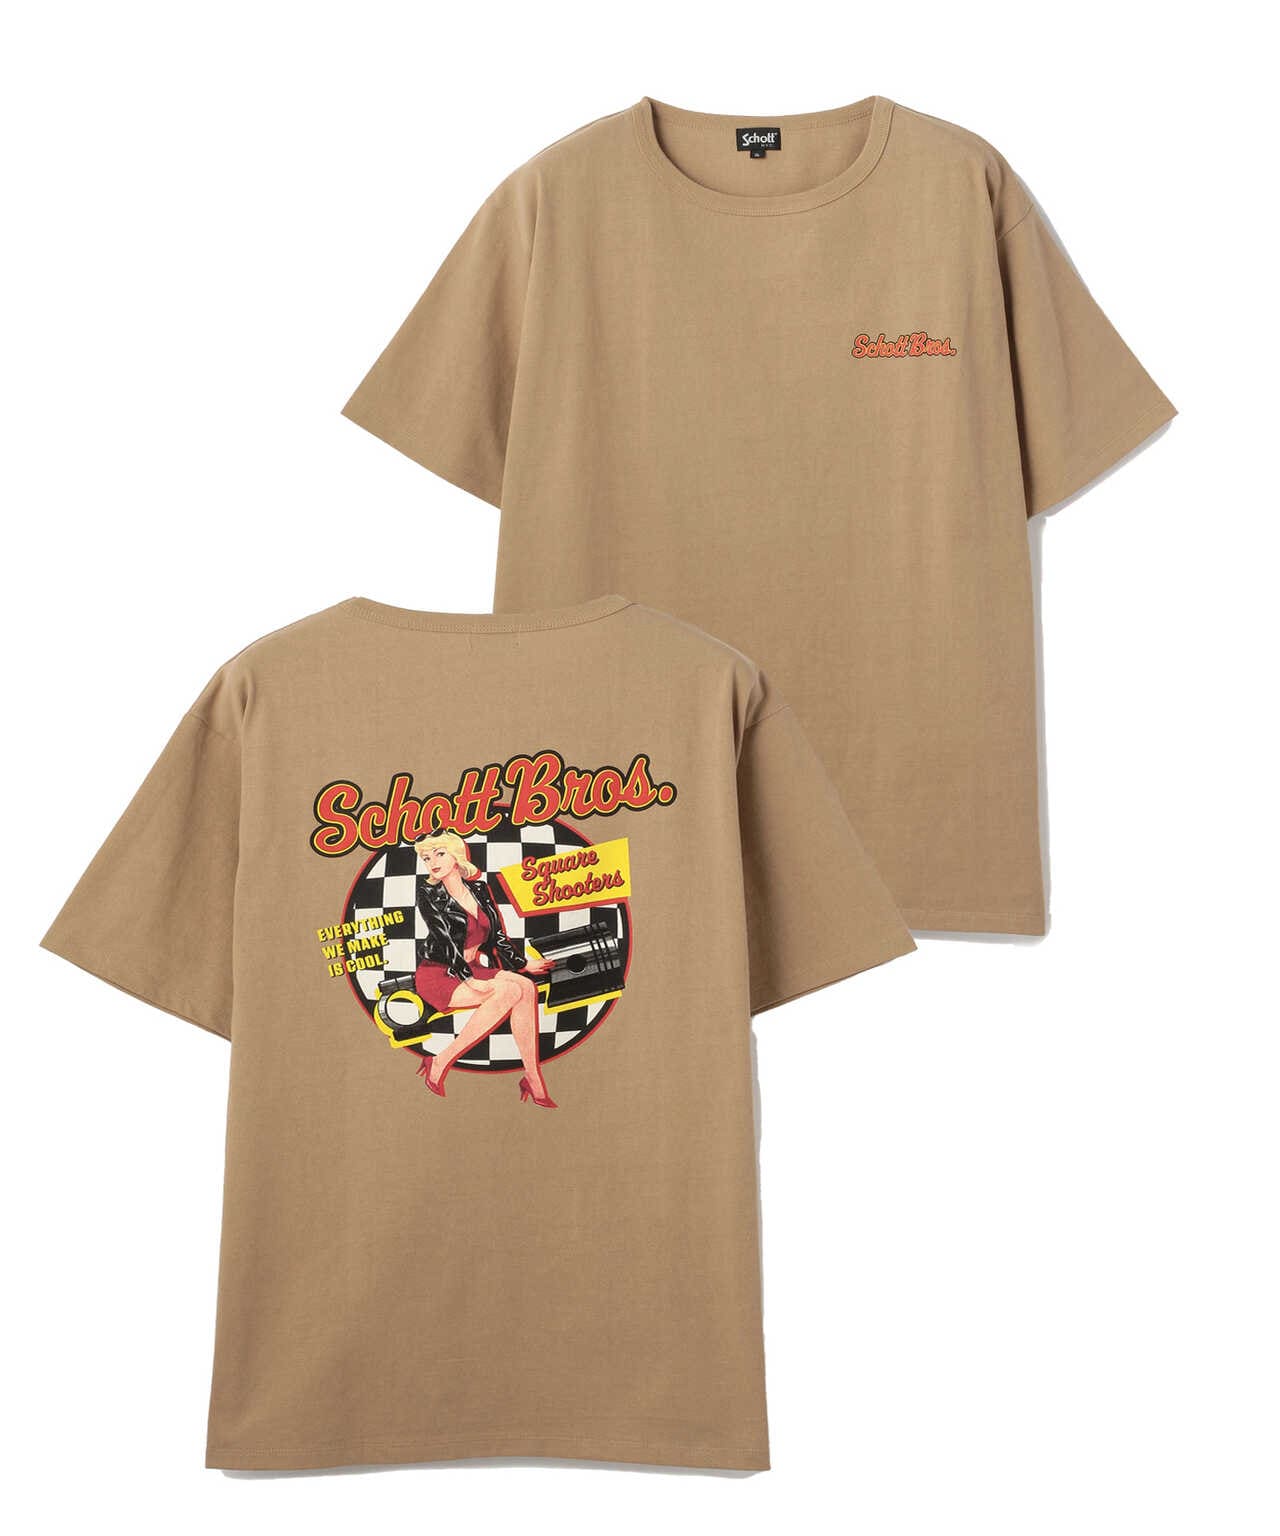 USA製 Schott ロゴデザイン Tシャツ ショット ワンスター ライダース